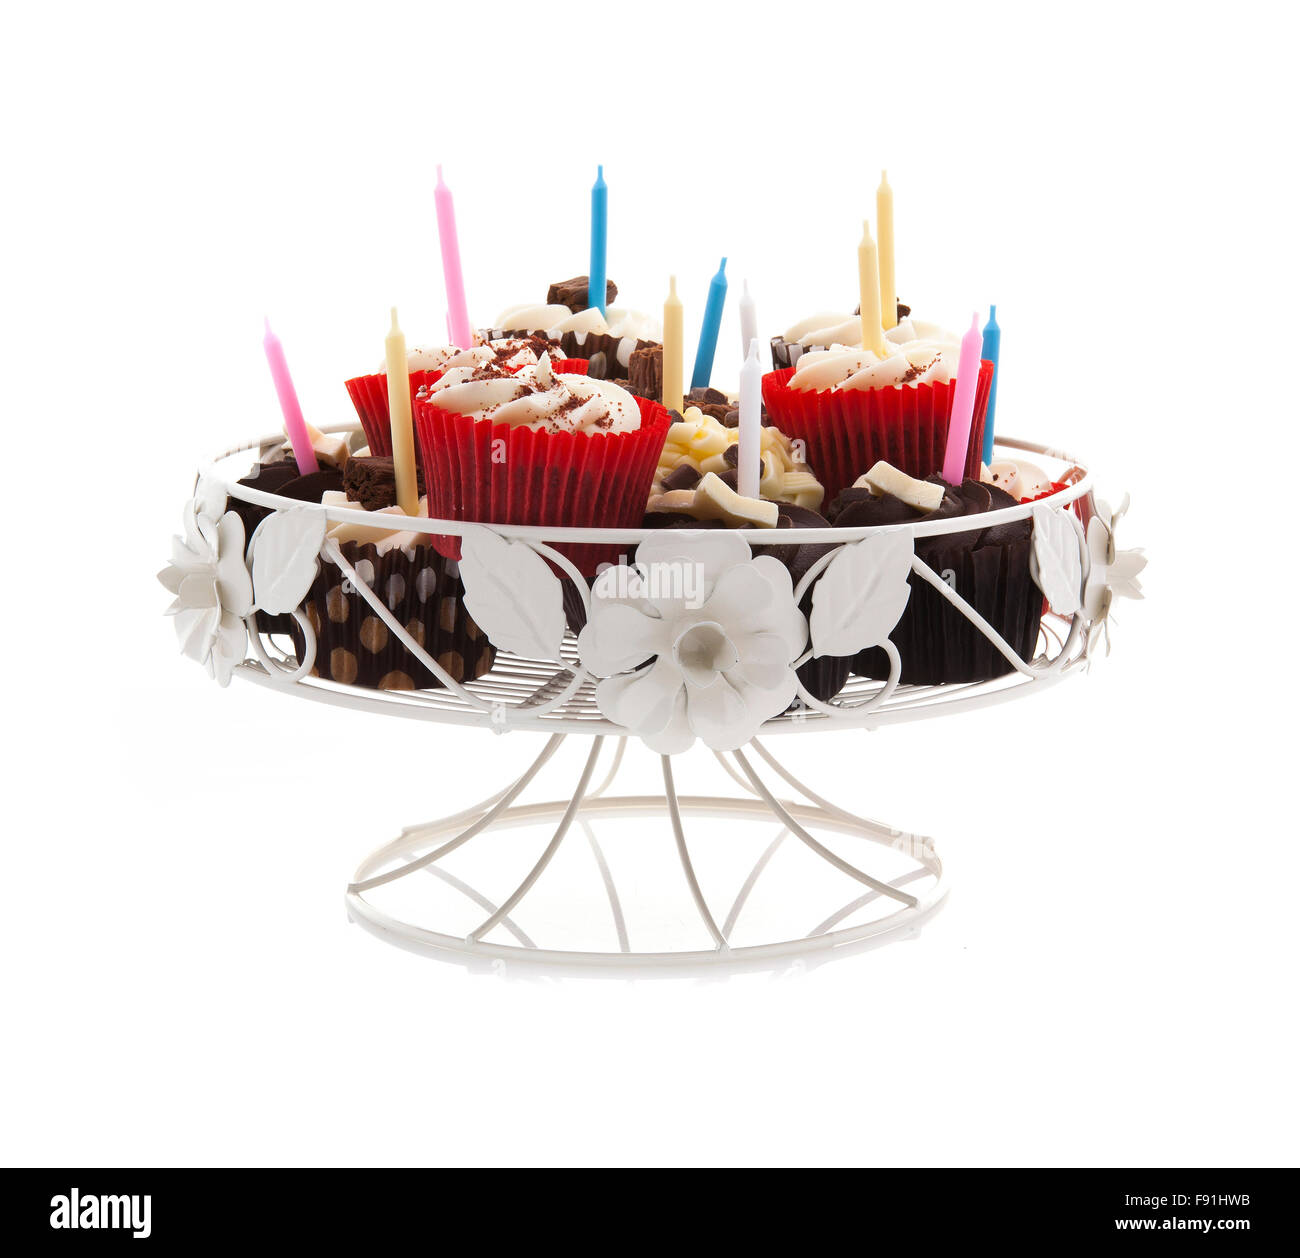 Geburtstag-Muffins auf einem Ständer mit Kerzen auf einem weißen Hintergrund Stockfoto